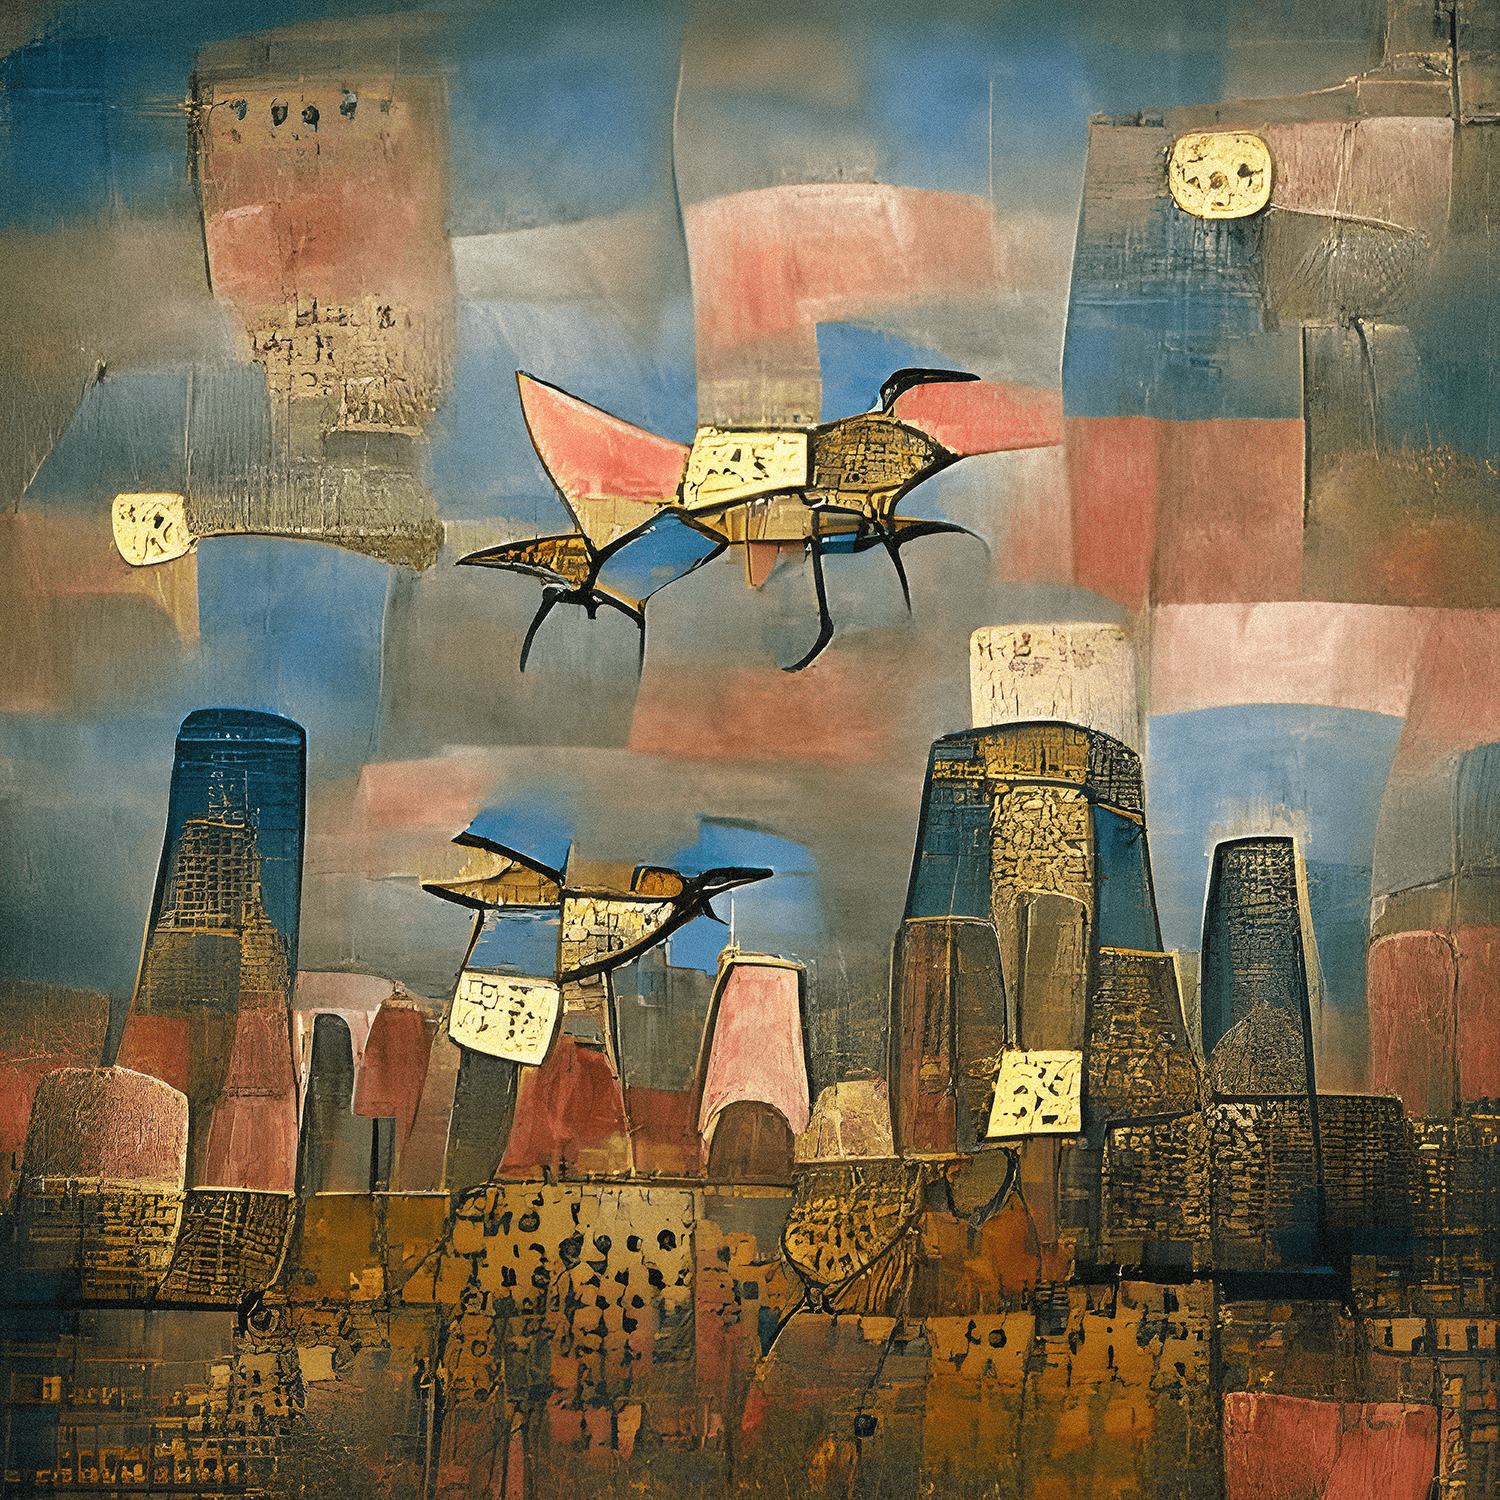 Robotic birds flying over a distopian city